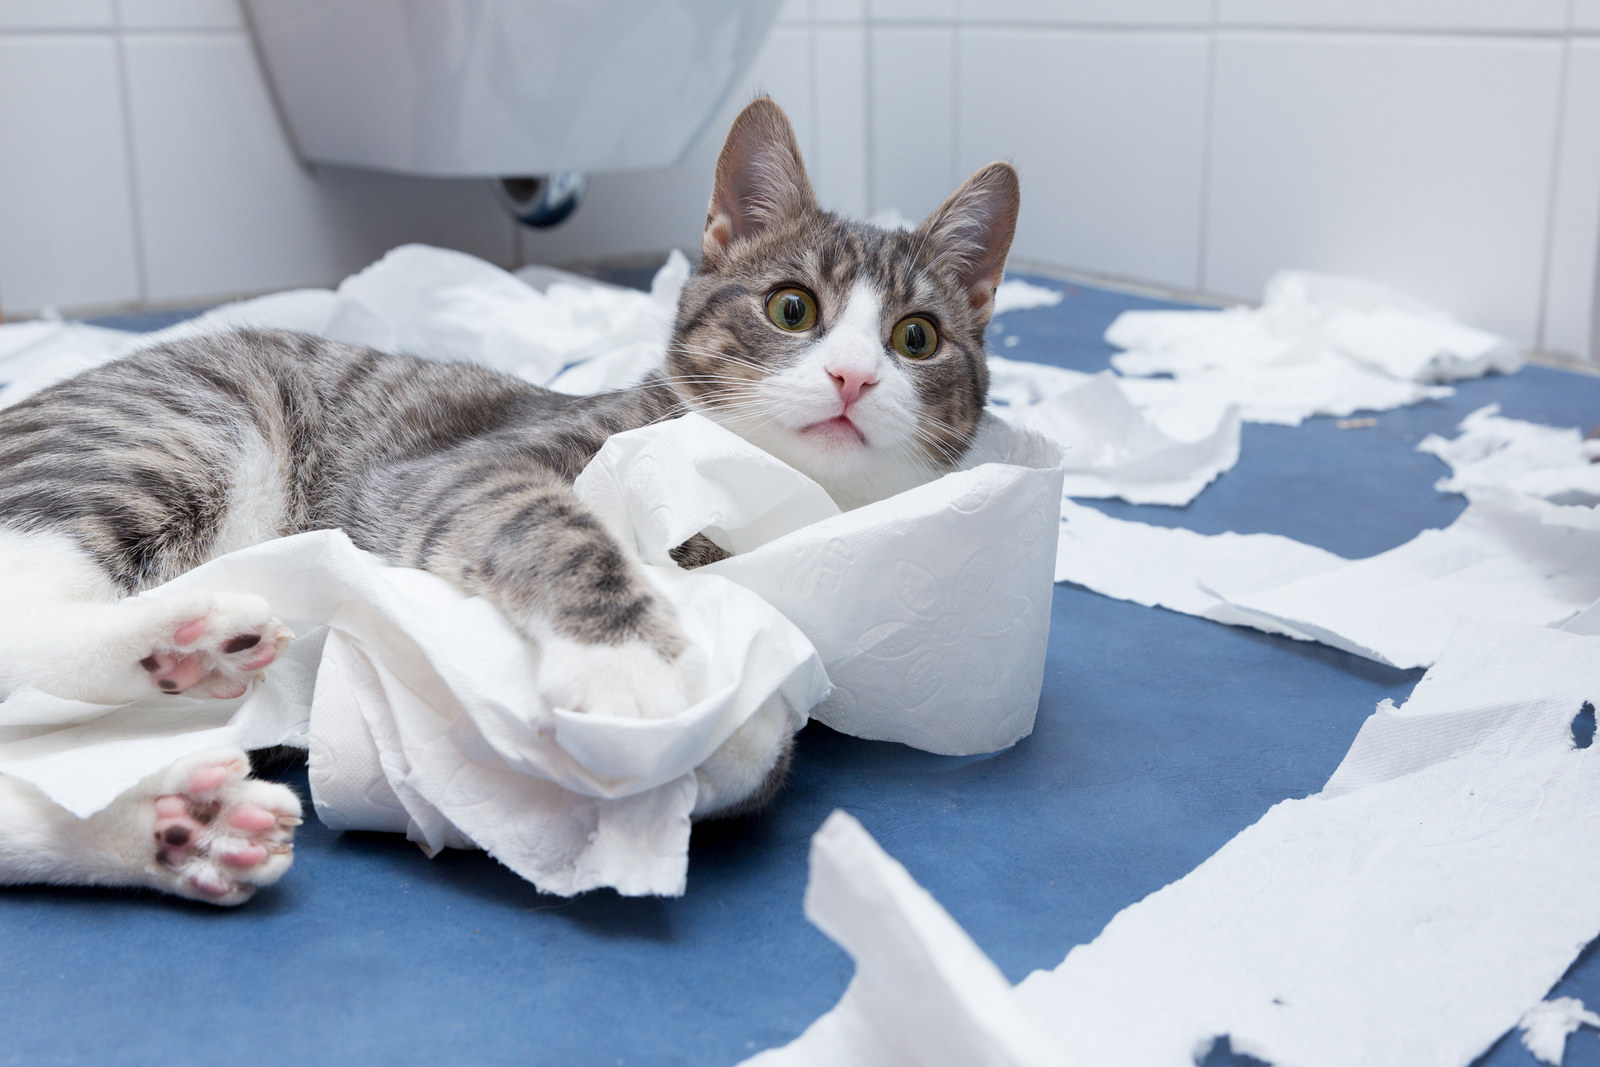 Cat sitting amongst shredded toilet paper in bathroom